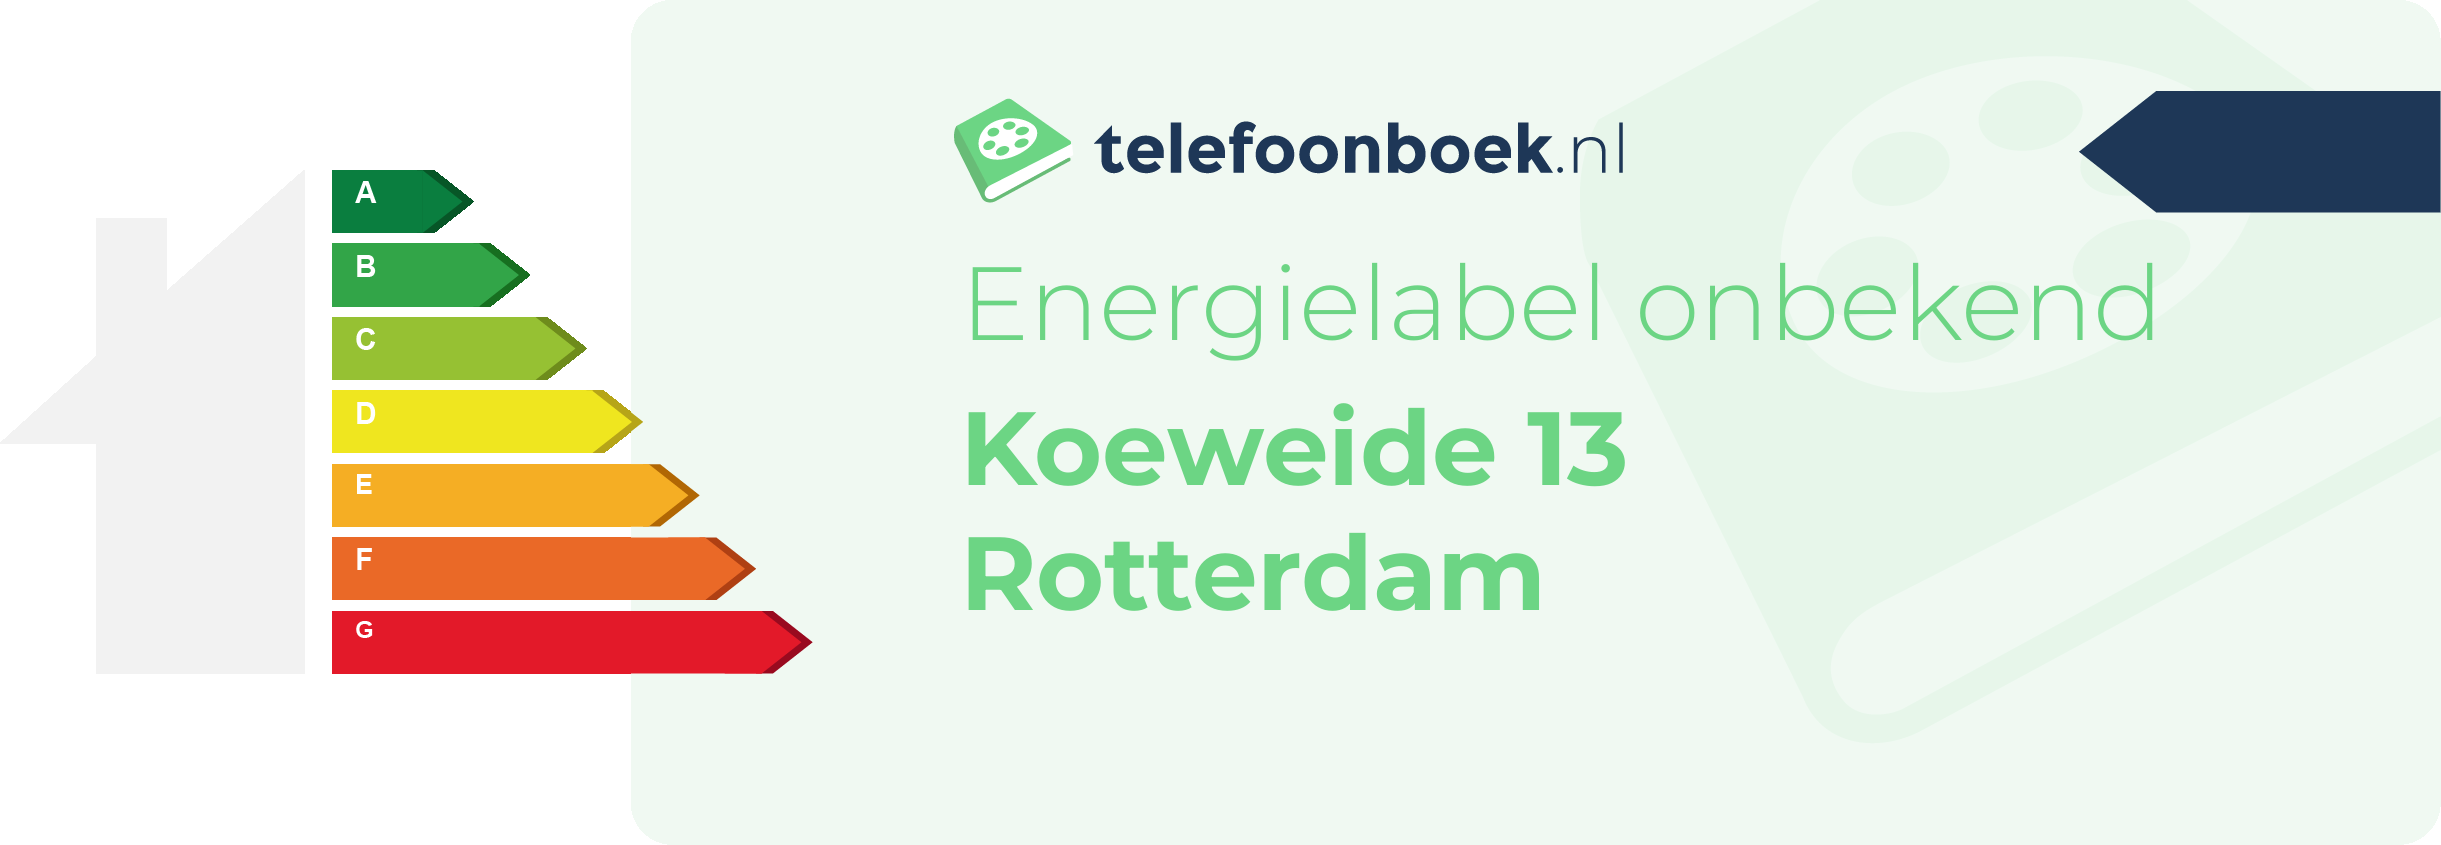 Energielabel Koeweide 13 Rotterdam